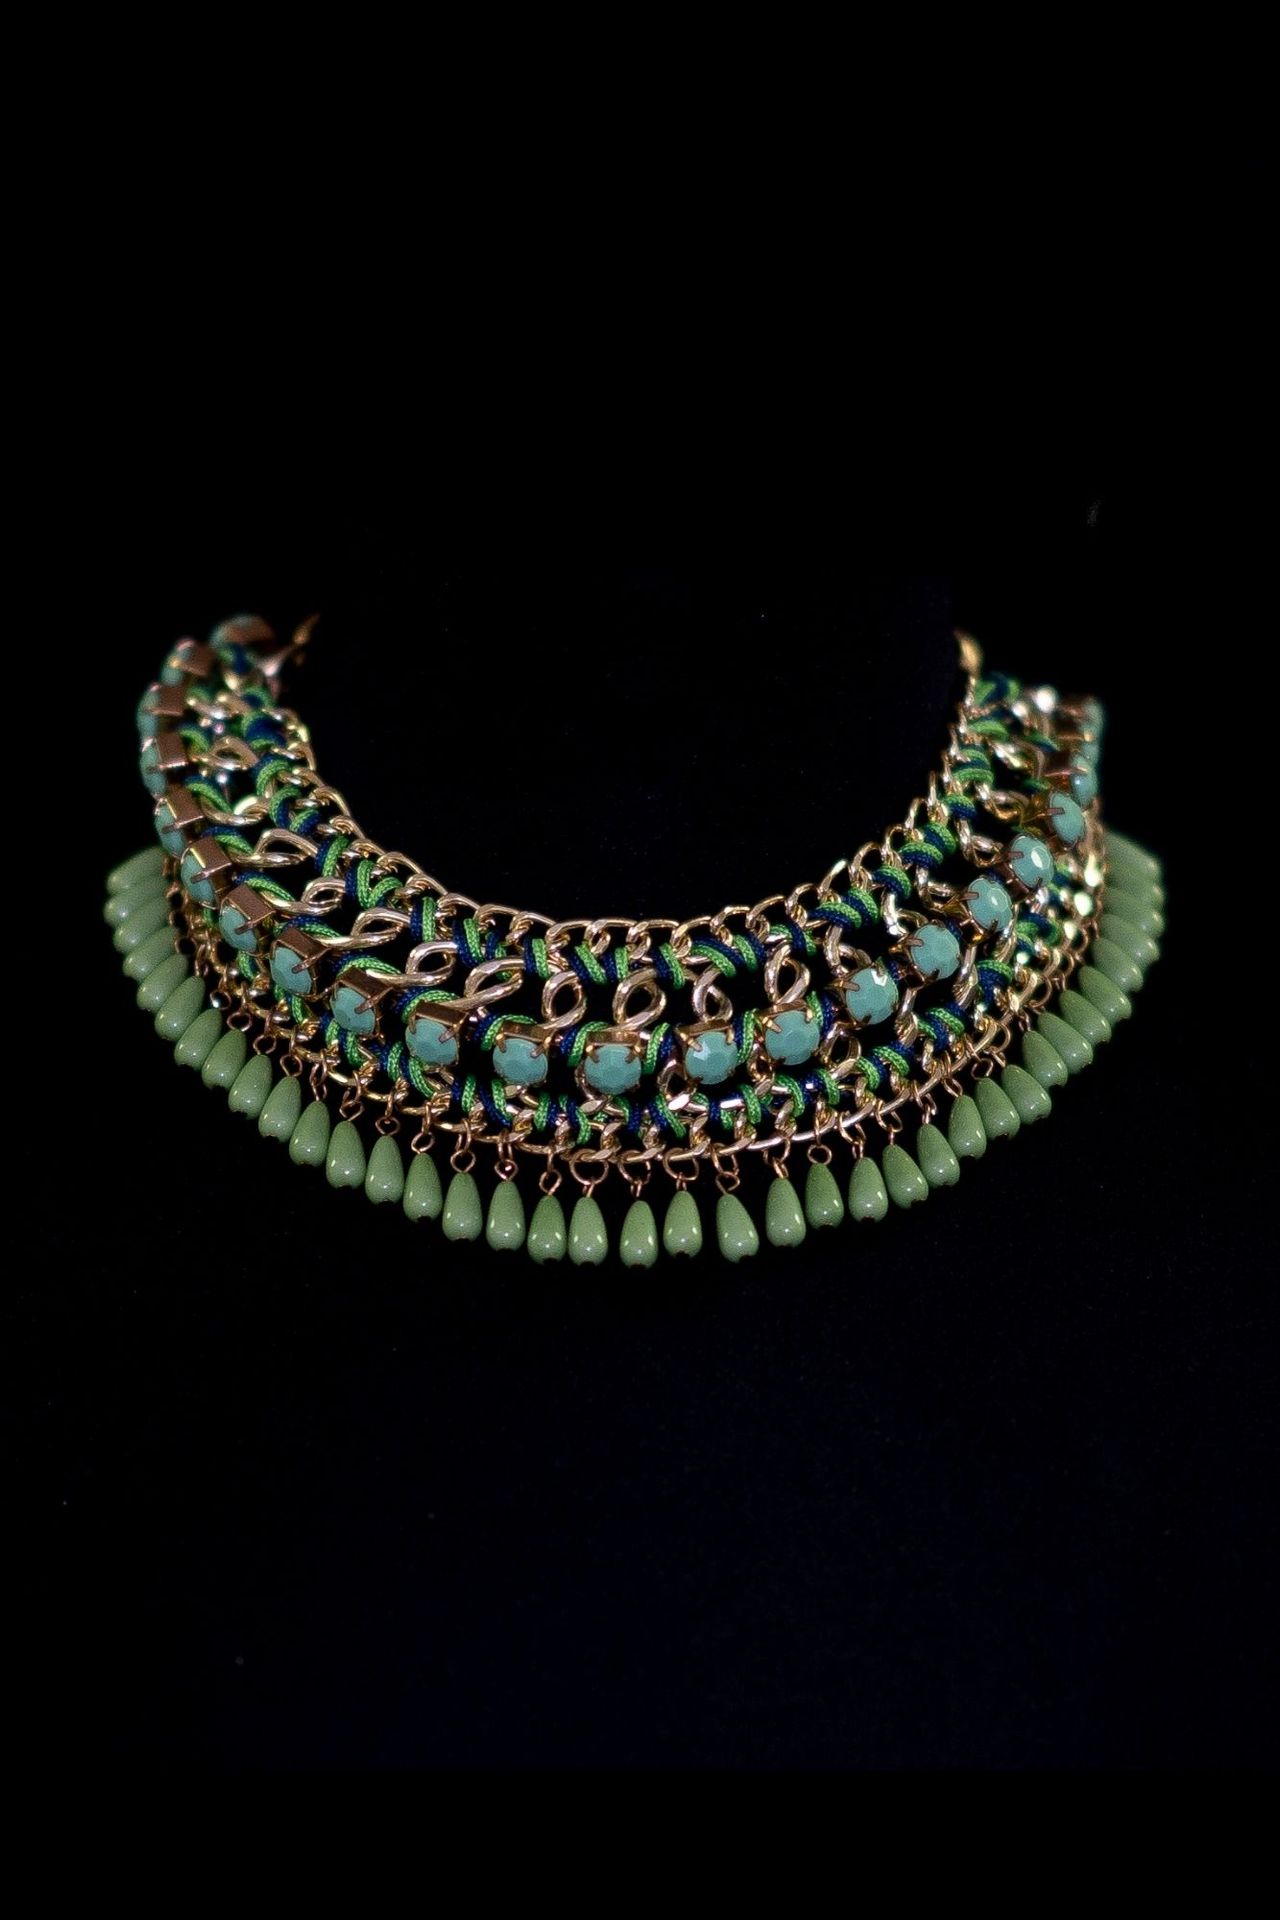 Collier antique Ras de cou en tissage de perles turquoise de récupération.